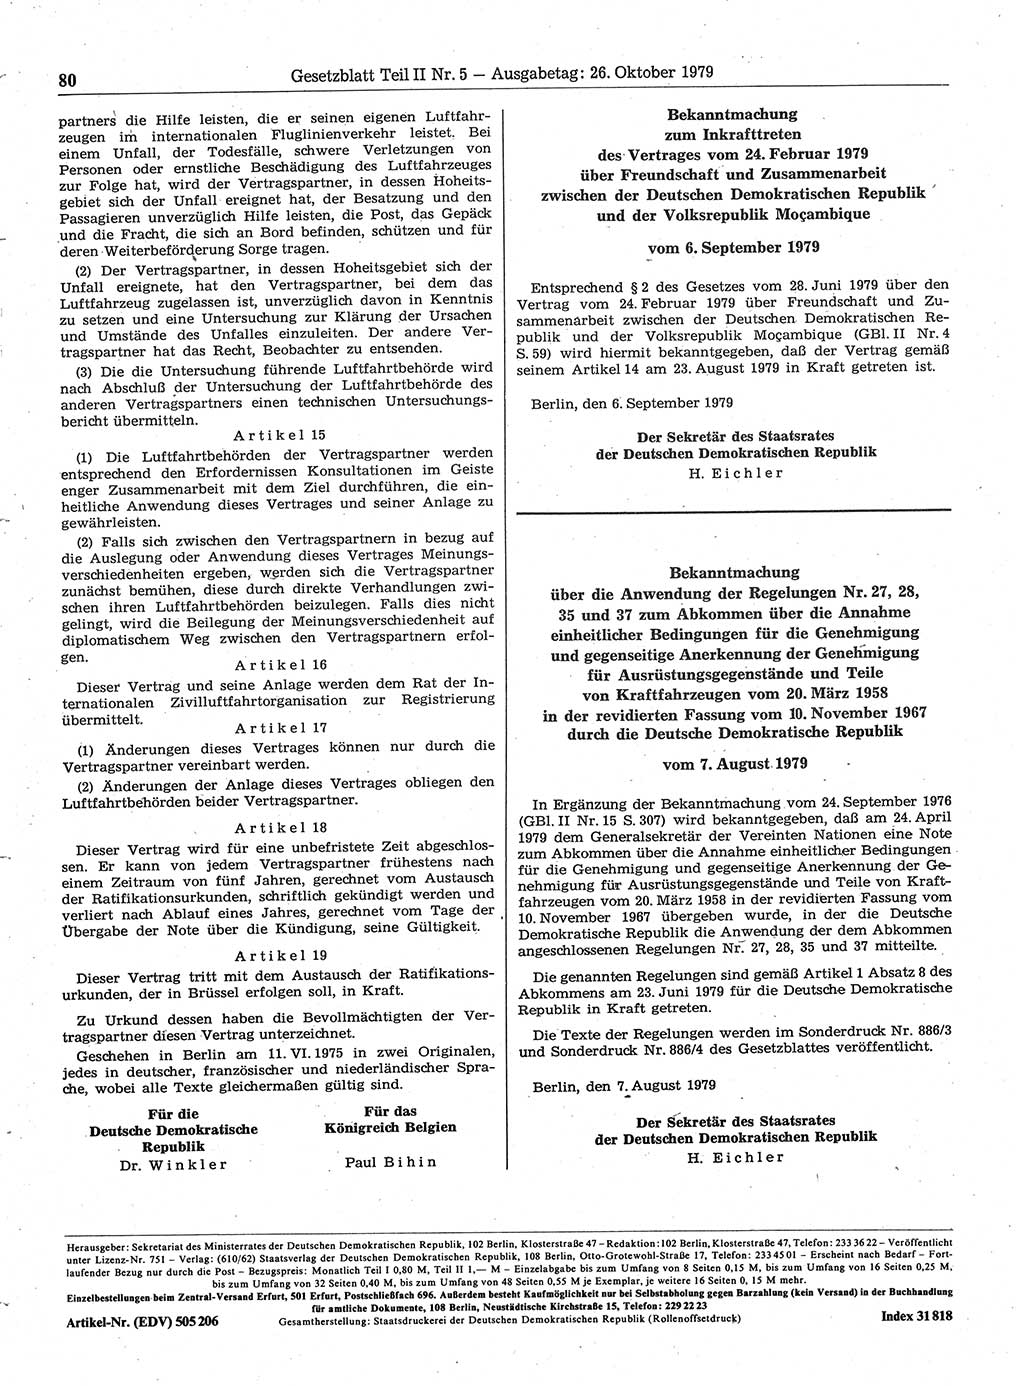 Gesetzblatt (GBl.) der Deutschen Demokratischen Republik (DDR) Teil ⅠⅠ 1979, Seite 80 (GBl. DDR ⅠⅠ 1979, S. 80)